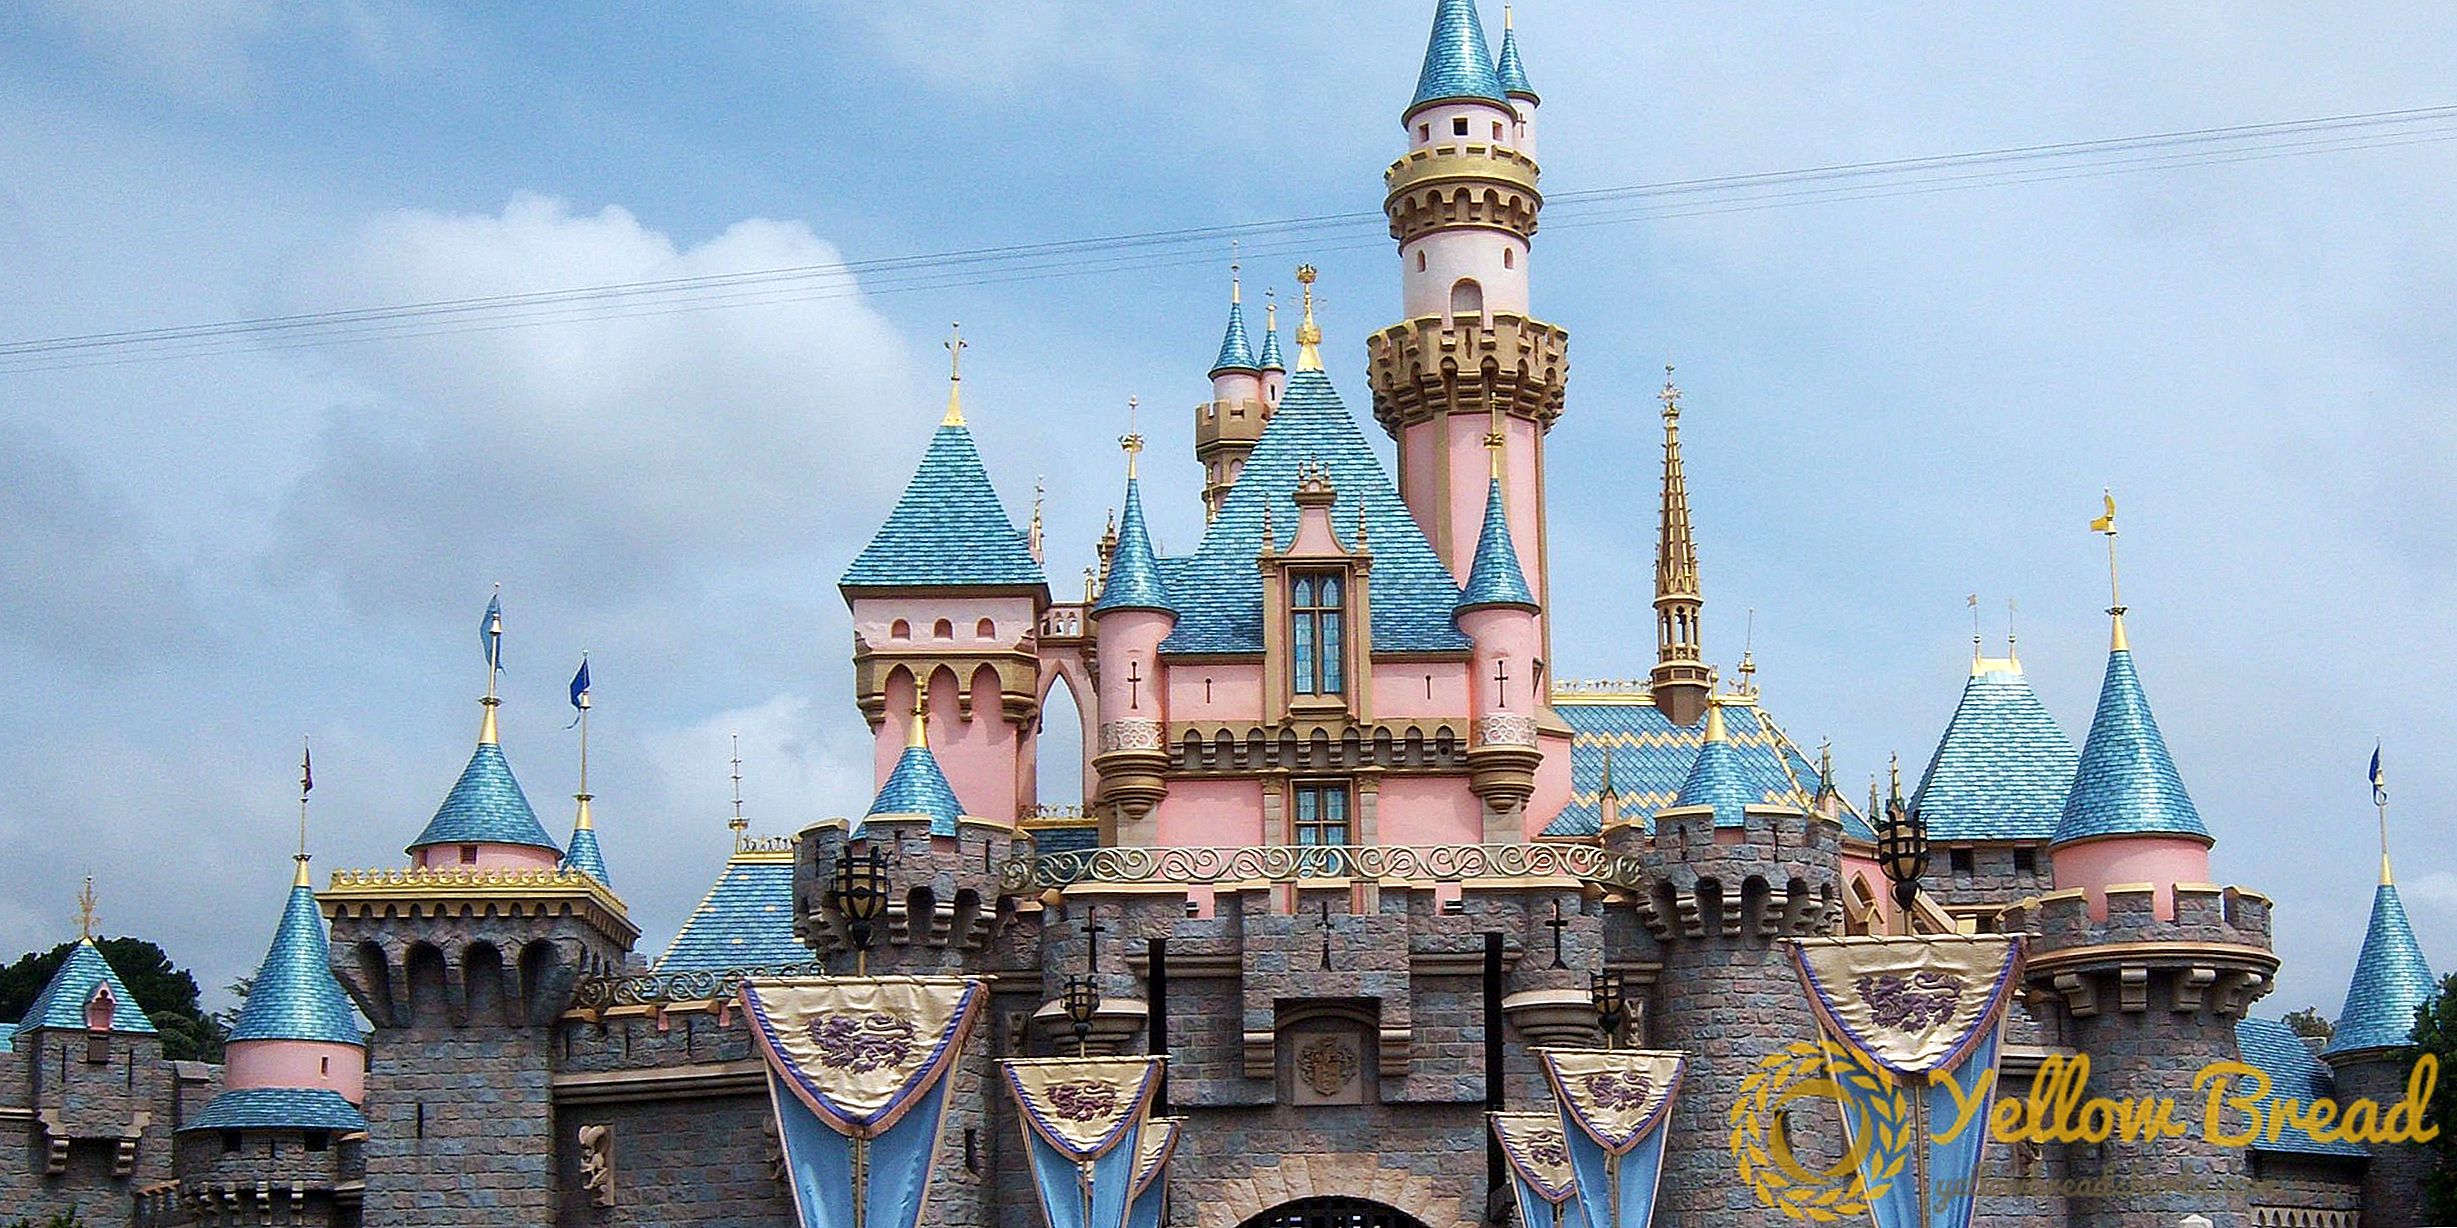 Une carte du parc Disneyland dessinée par Walt Disney devrait être vendue 750 000 $